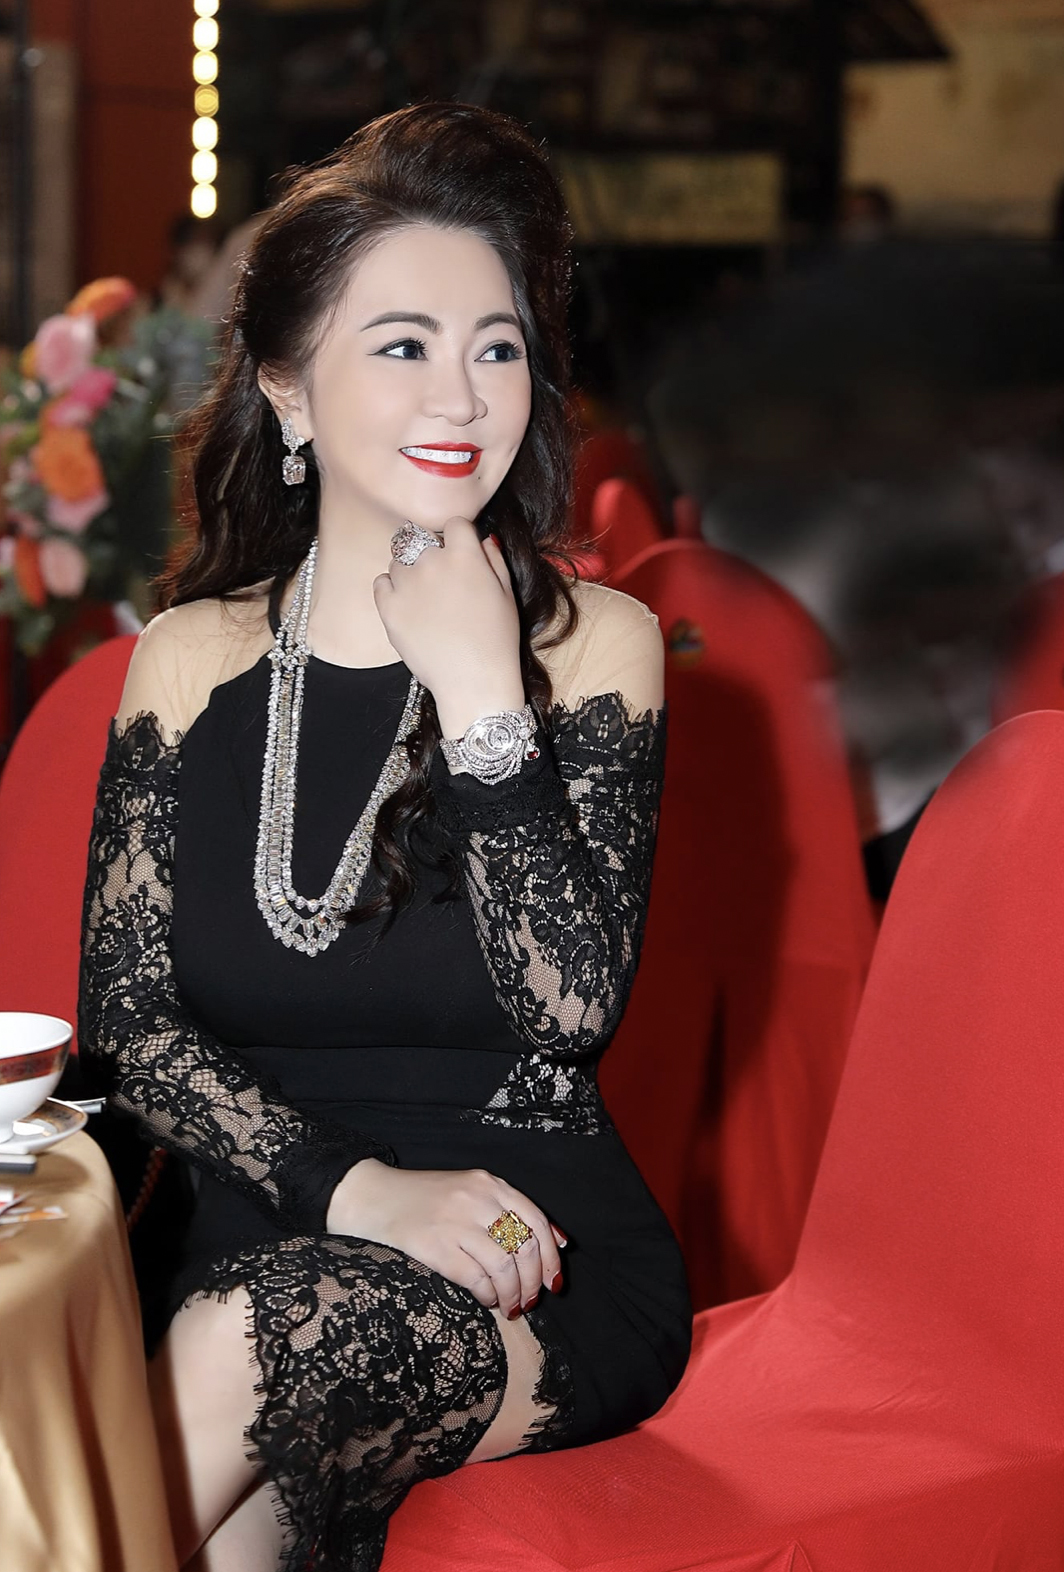 Trang Trần lại cà khịa CEO Phương Hằng dịp đầu năm, tiết lộ bà chủ Đại Nam bị cấm xuất cảnh?